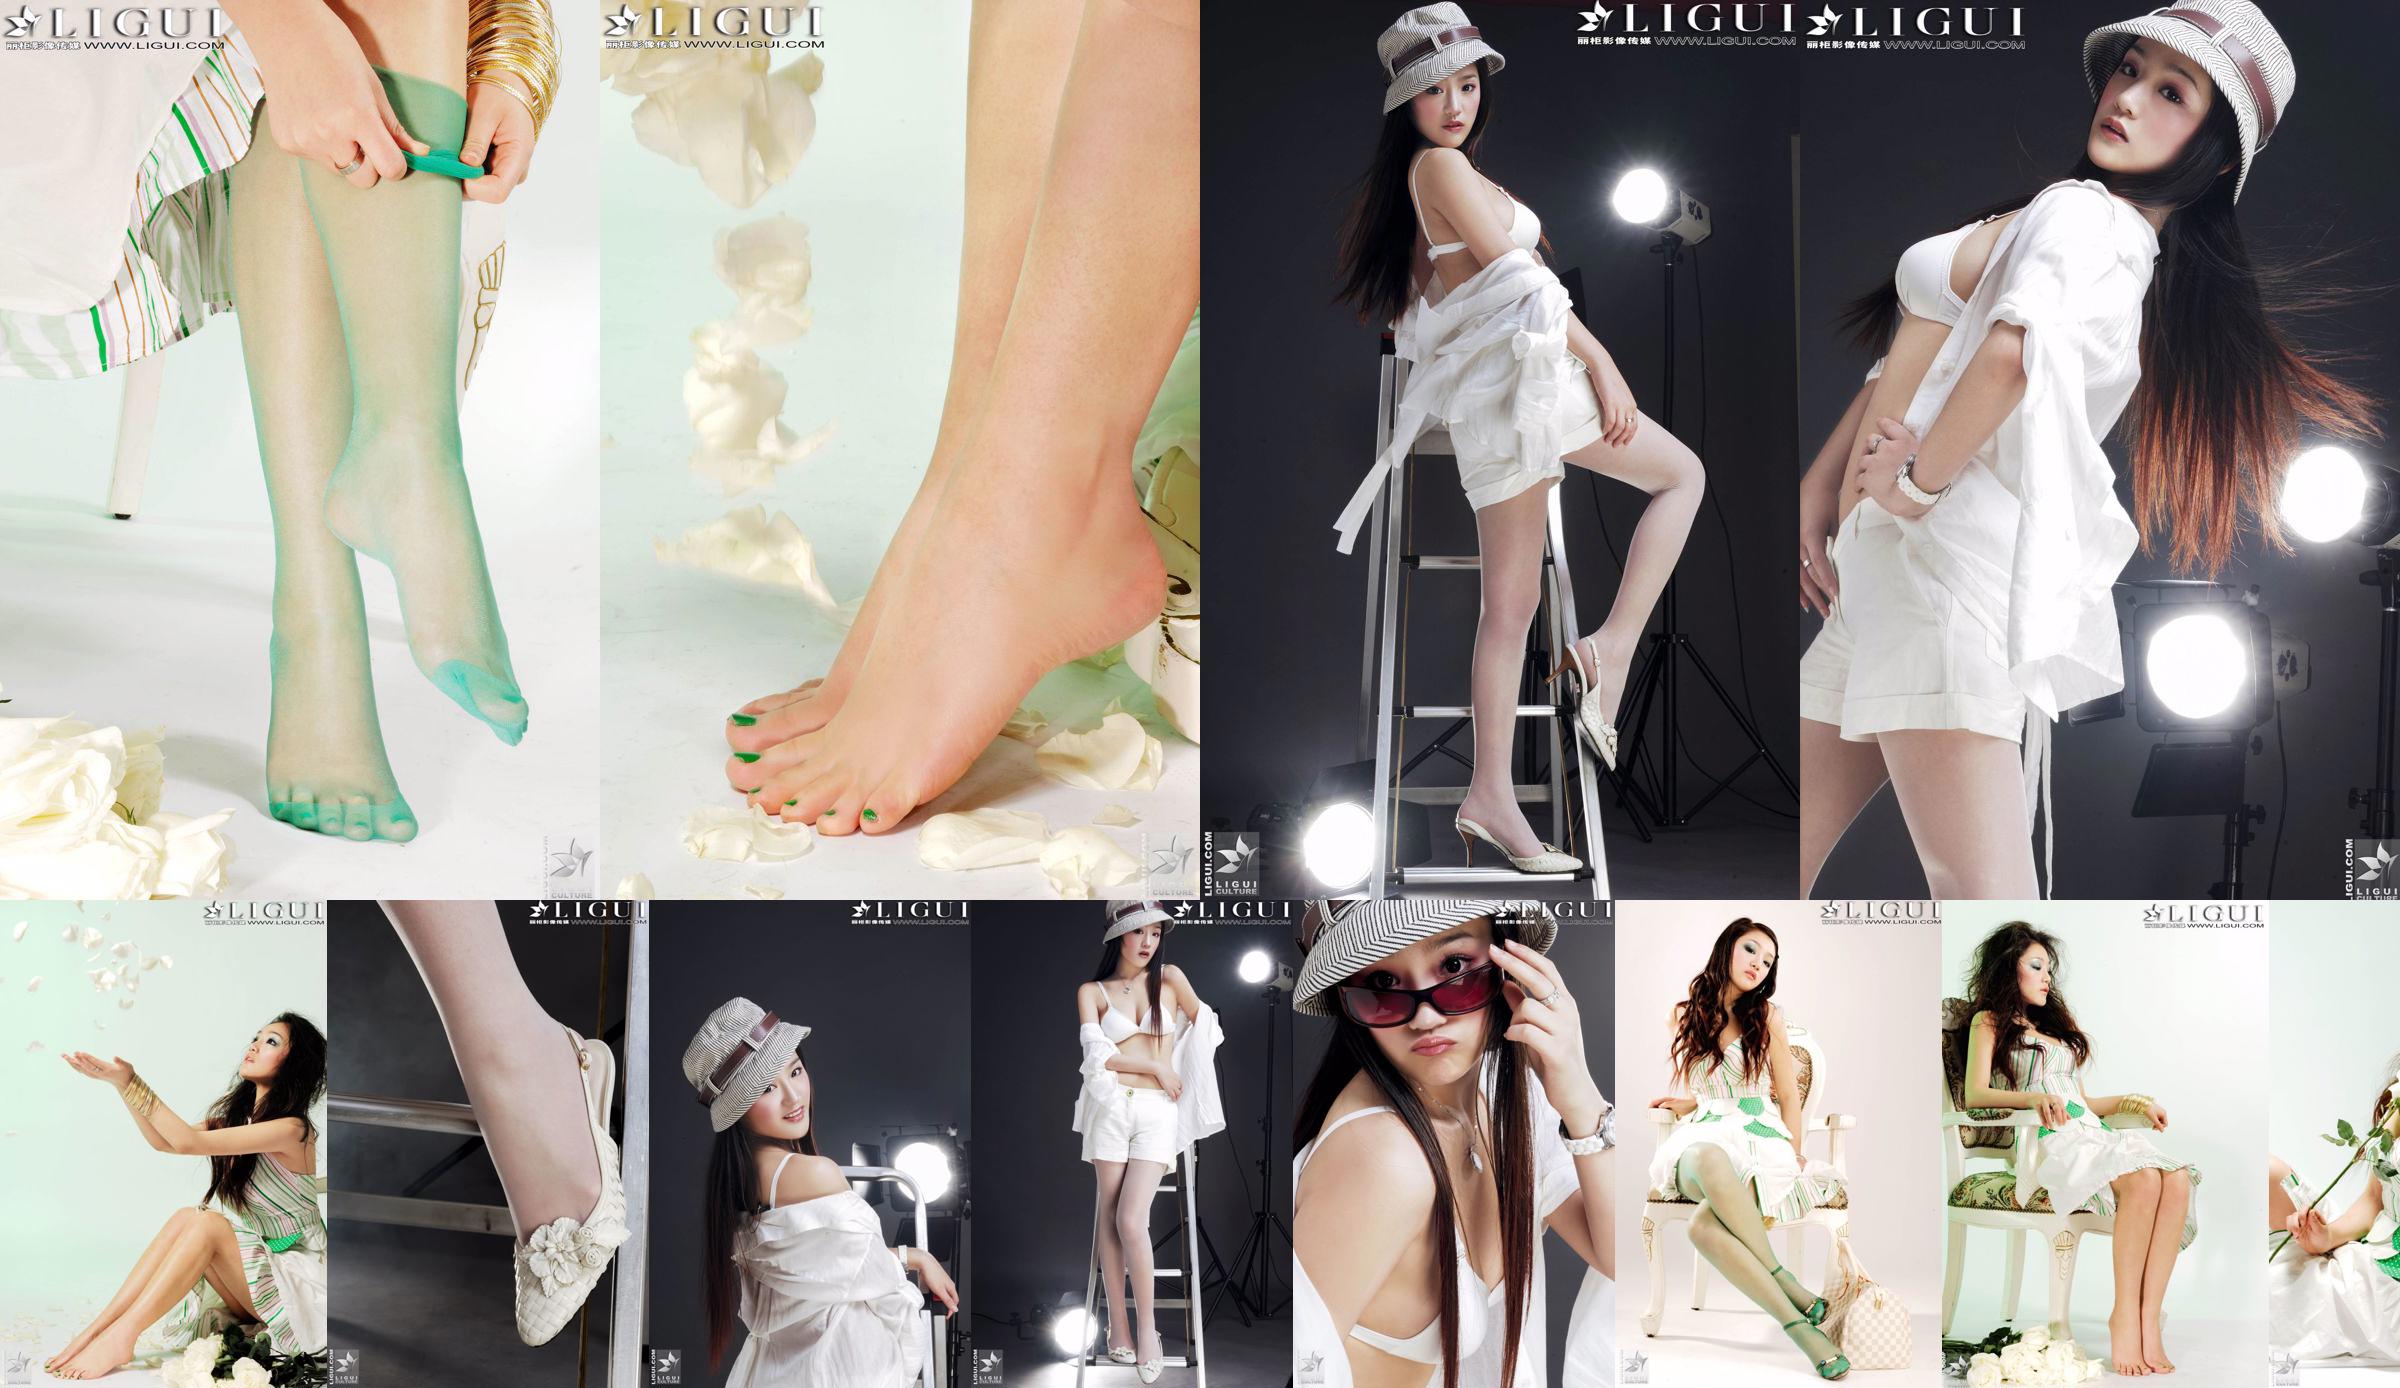 [丽 柜 贵 Fuß LiGui] Model Zhang Jingyans "Modischer Fuß" -Foto von schönen Beinen und Seidenfüßen No.fb7c4d Seite 1